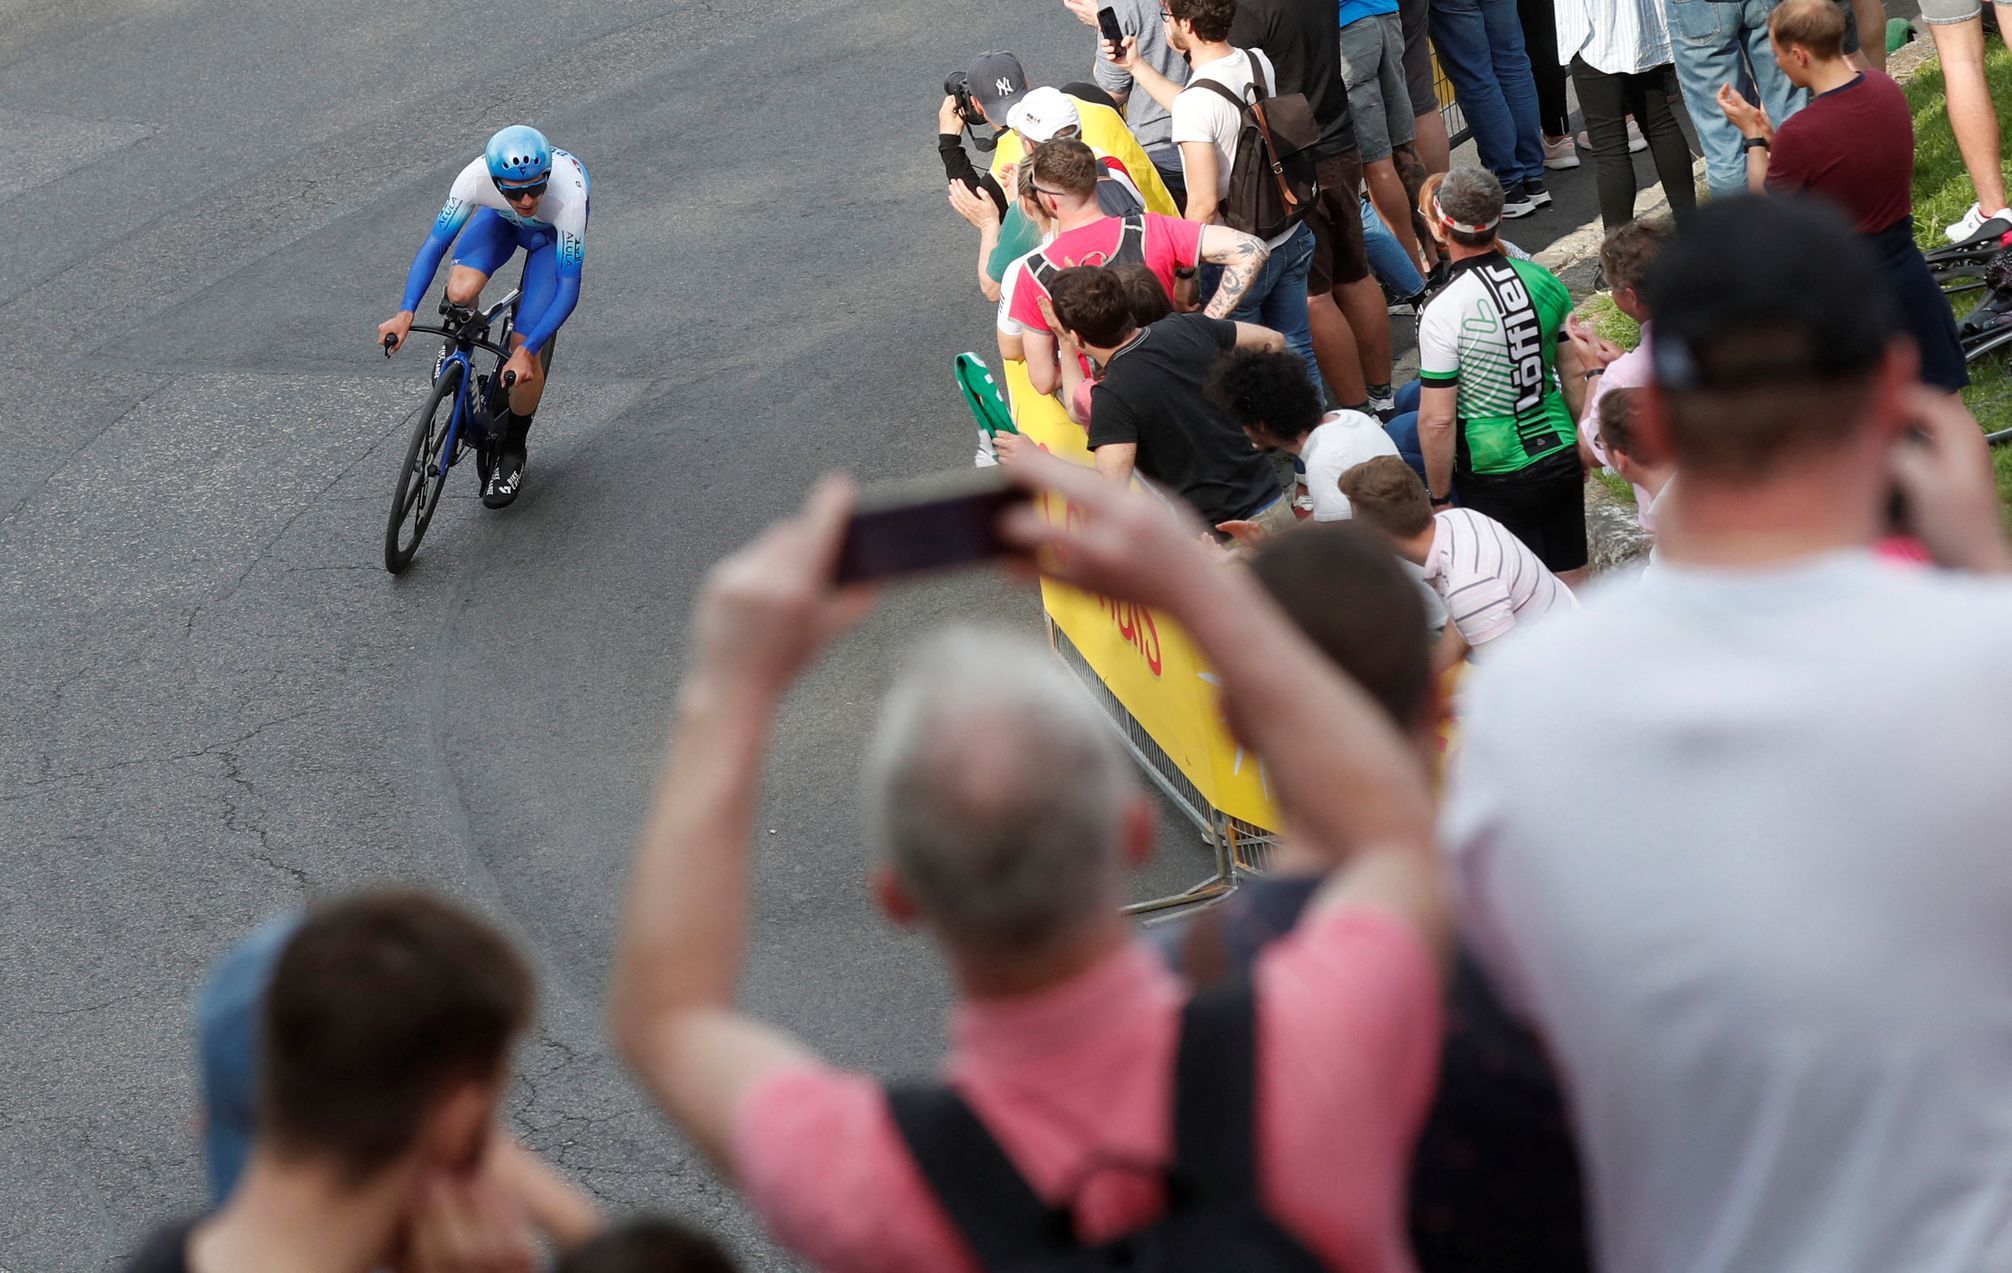 Lo accetto, ride Yates dopo l’inaspettata vittoria nella cronometro del Giro